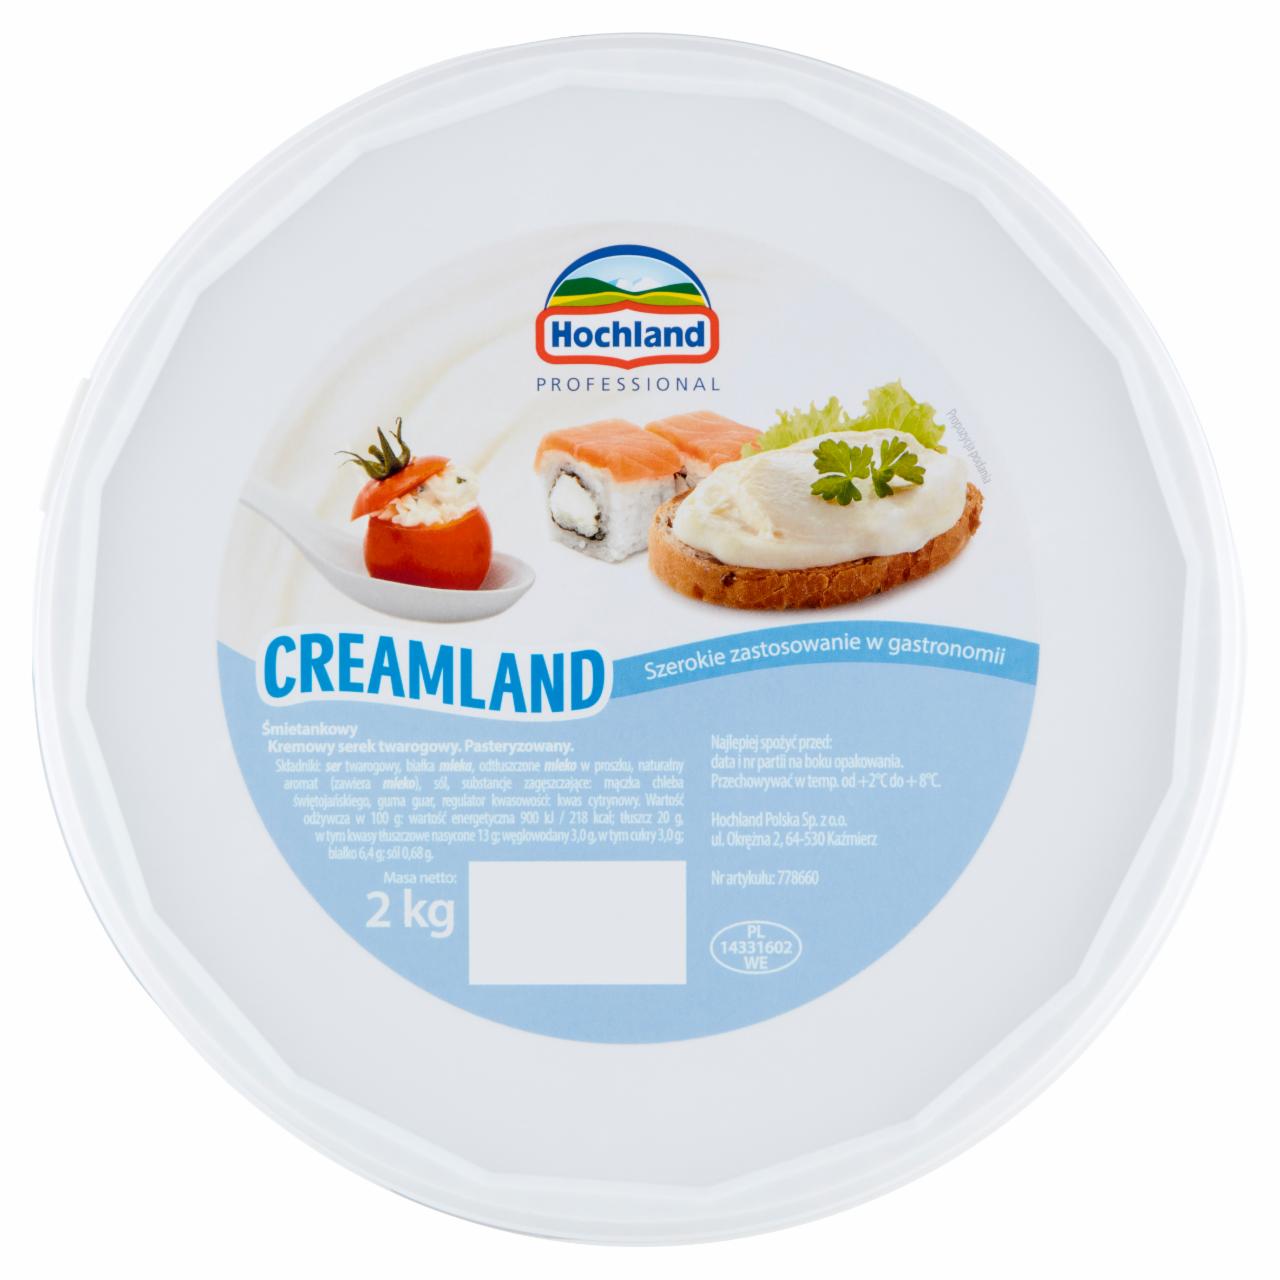 Zdjęcia - Hochland Professional Creamland Kremowy serek twarogowy śmietankowy 2 kg